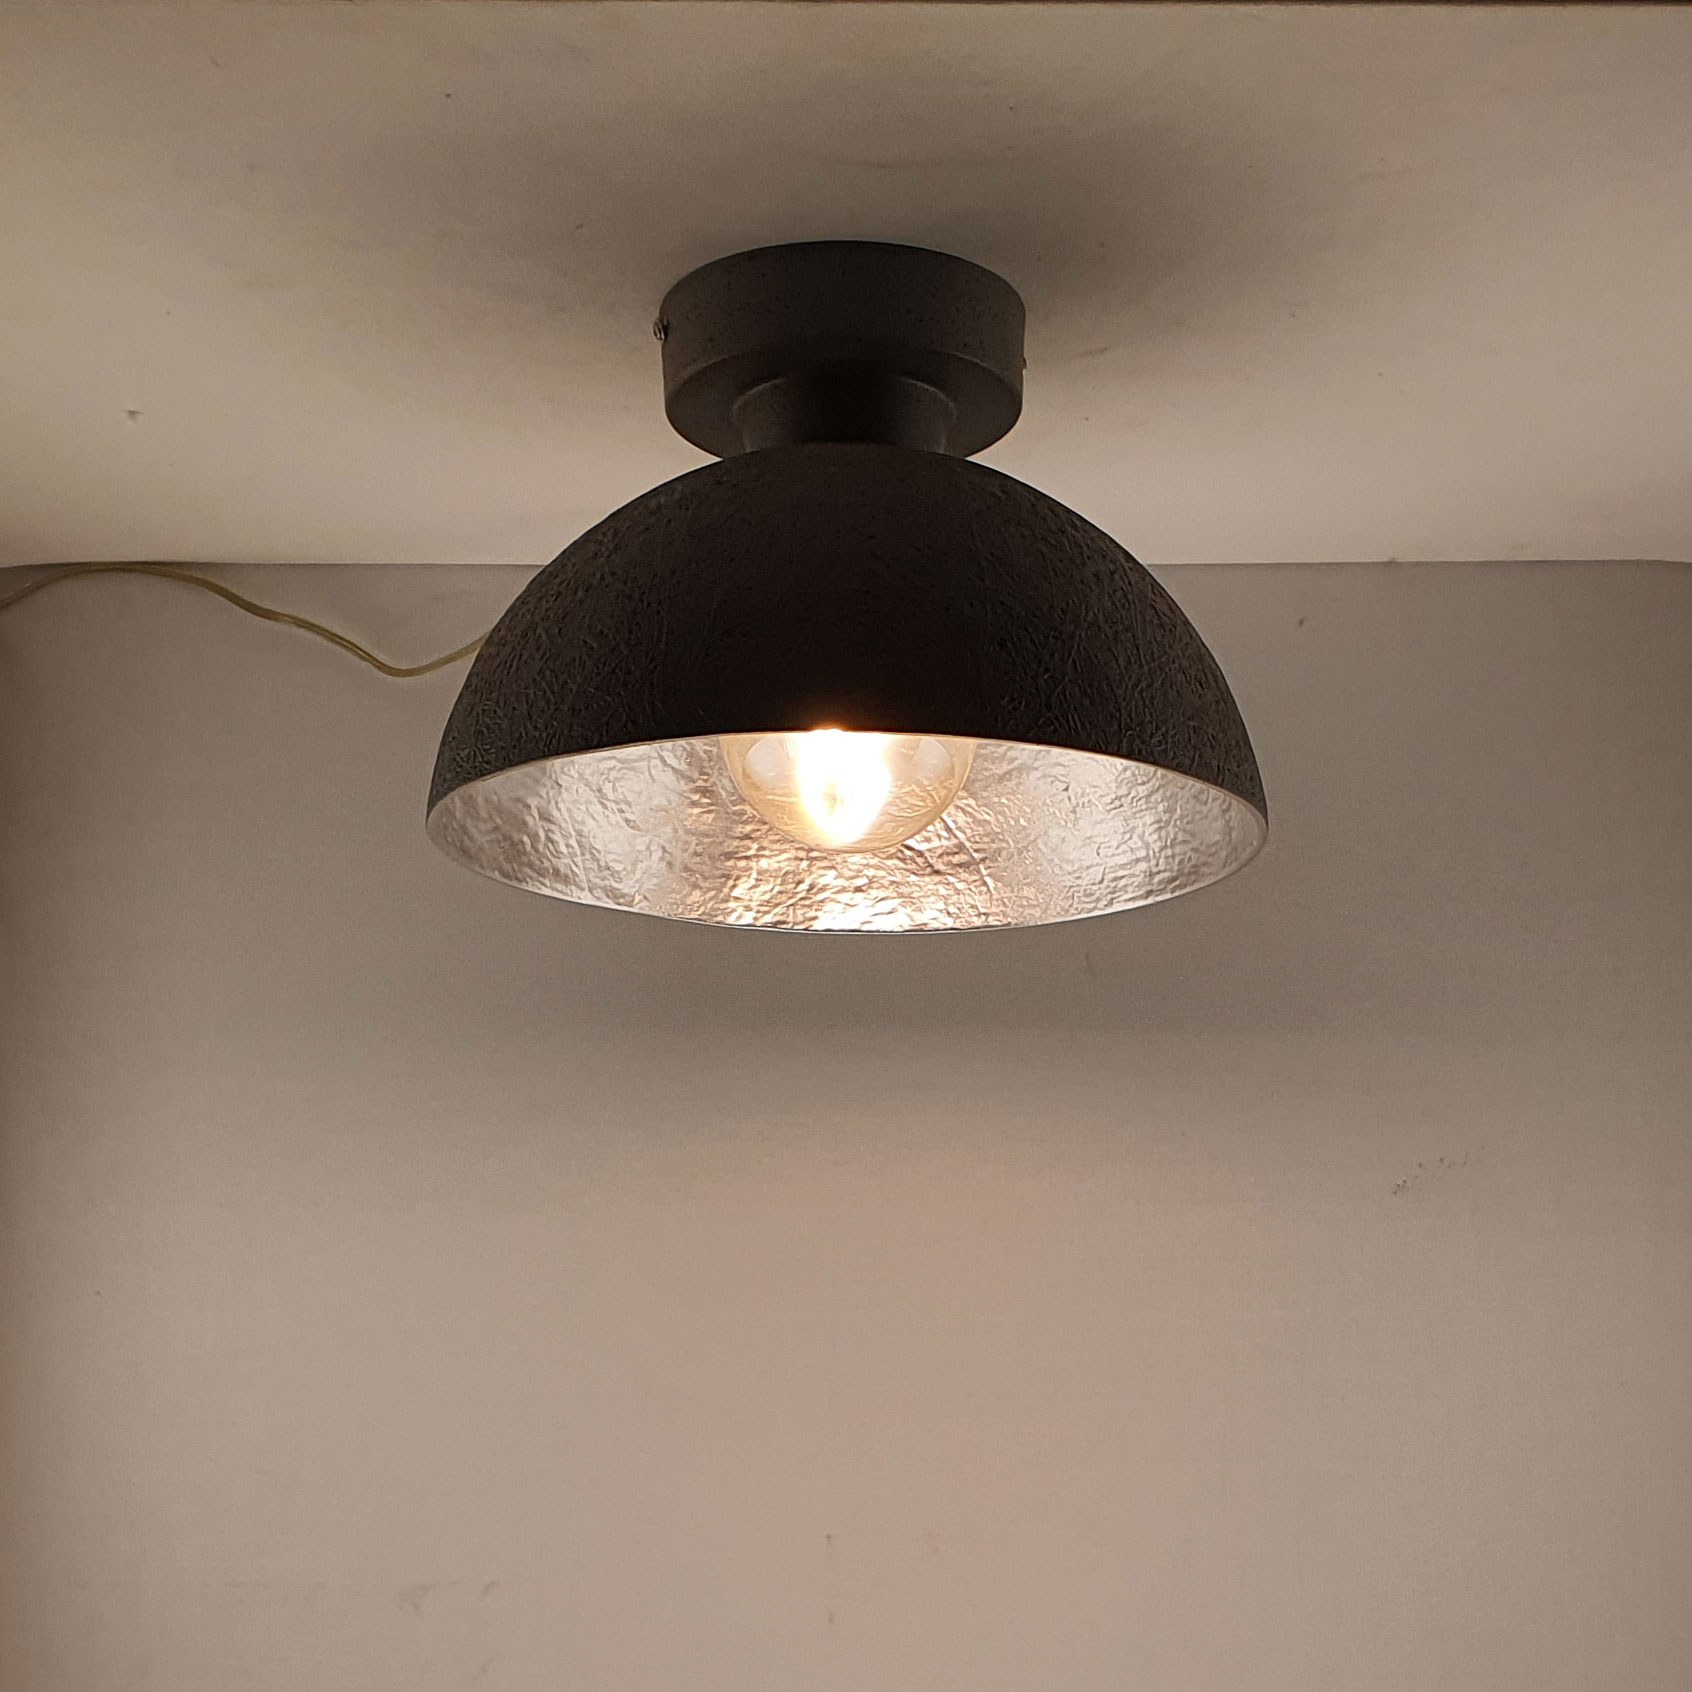 Interpreteren Onvervangbaar magnifiek Plafondlamp Mezzo Tondo 30cm Grijs/Zilver 05-PL2140-9018 | Lampendiscount.nl